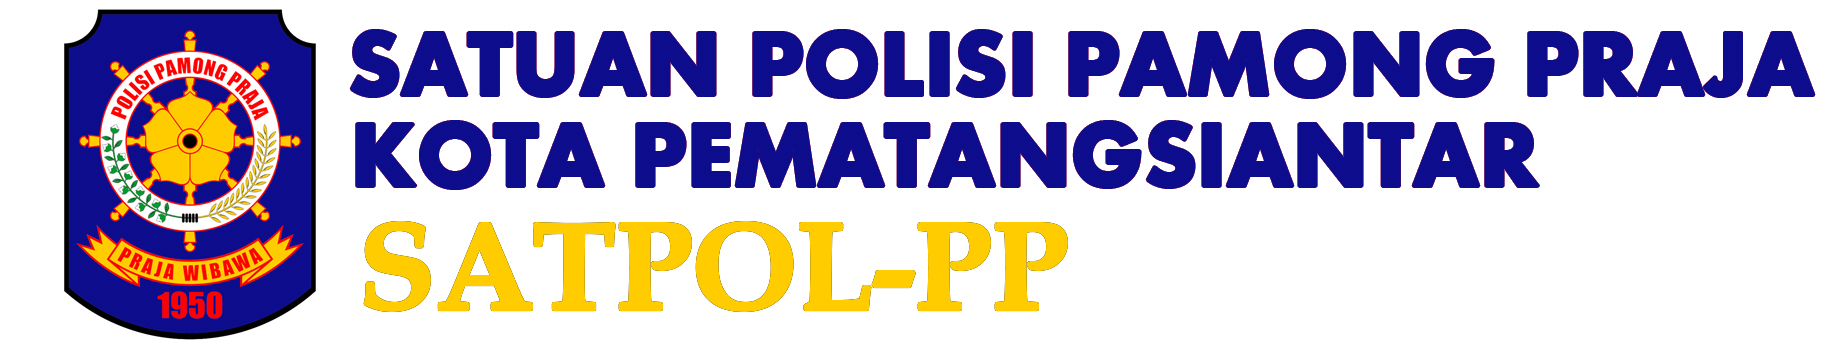 Logo for SATPOL-PP KOTA PEMATANG SIANTAR